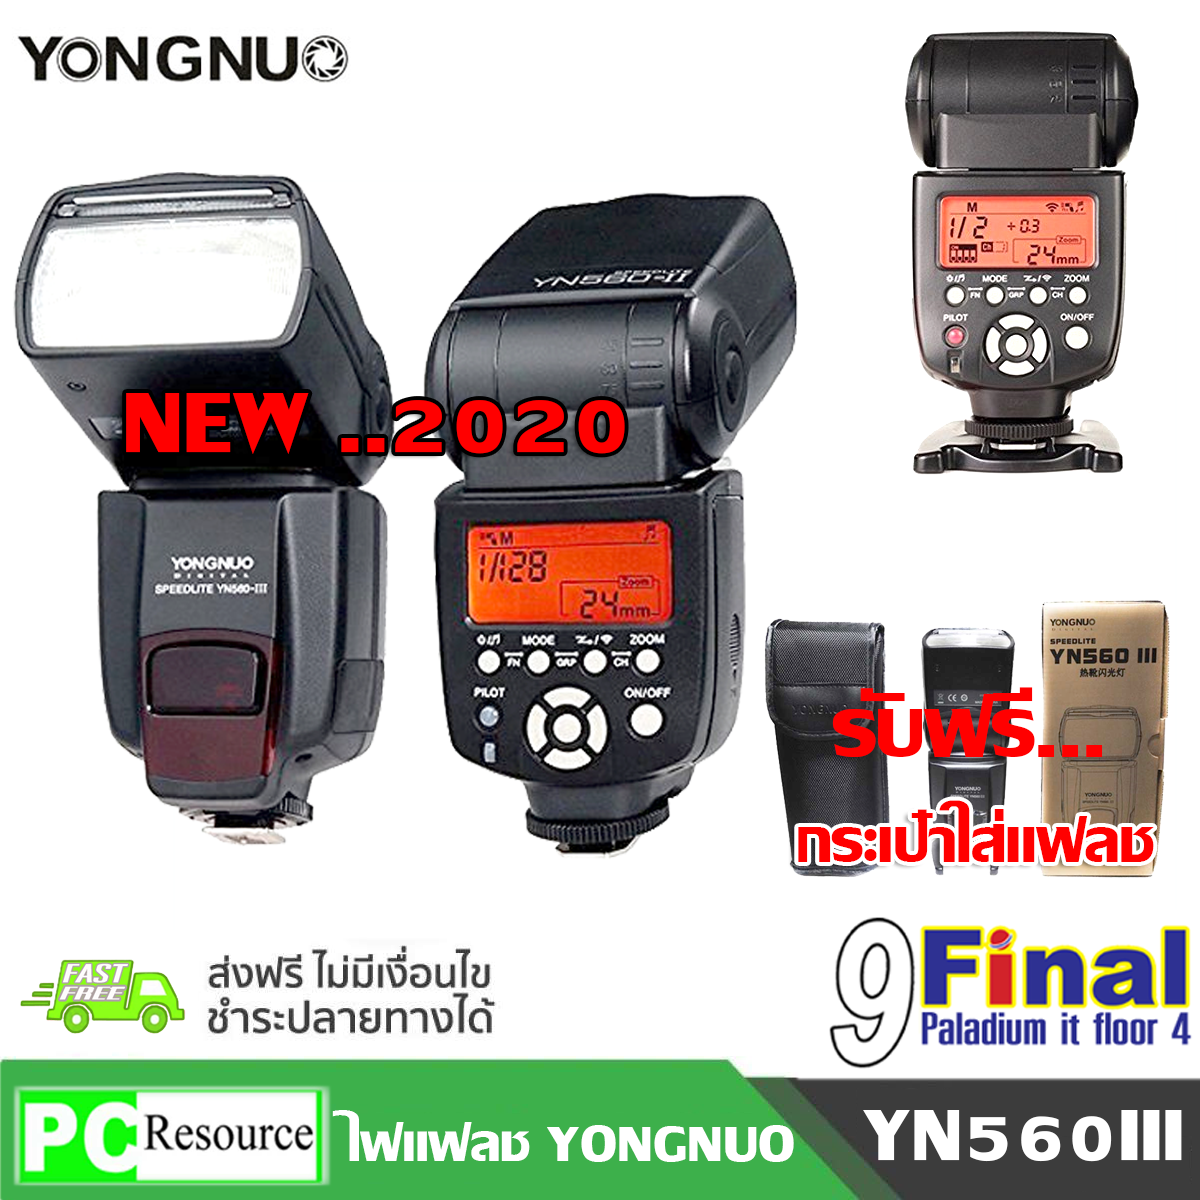 แฟลชยงนัว Yongnuo Flash YN-560 III by 9FINAL ไฟแฟลช ใช้ได้กับทุกยี่ห้อที่มี Hot Shoe เช่น Canon Nikon Pentax Olympus  Digital Cameras Yongnuo 560III ( YN560III ) for DSLR Camera Flash Light (Black) ไม่รวม battery 5600K Color Temperature Built-in F